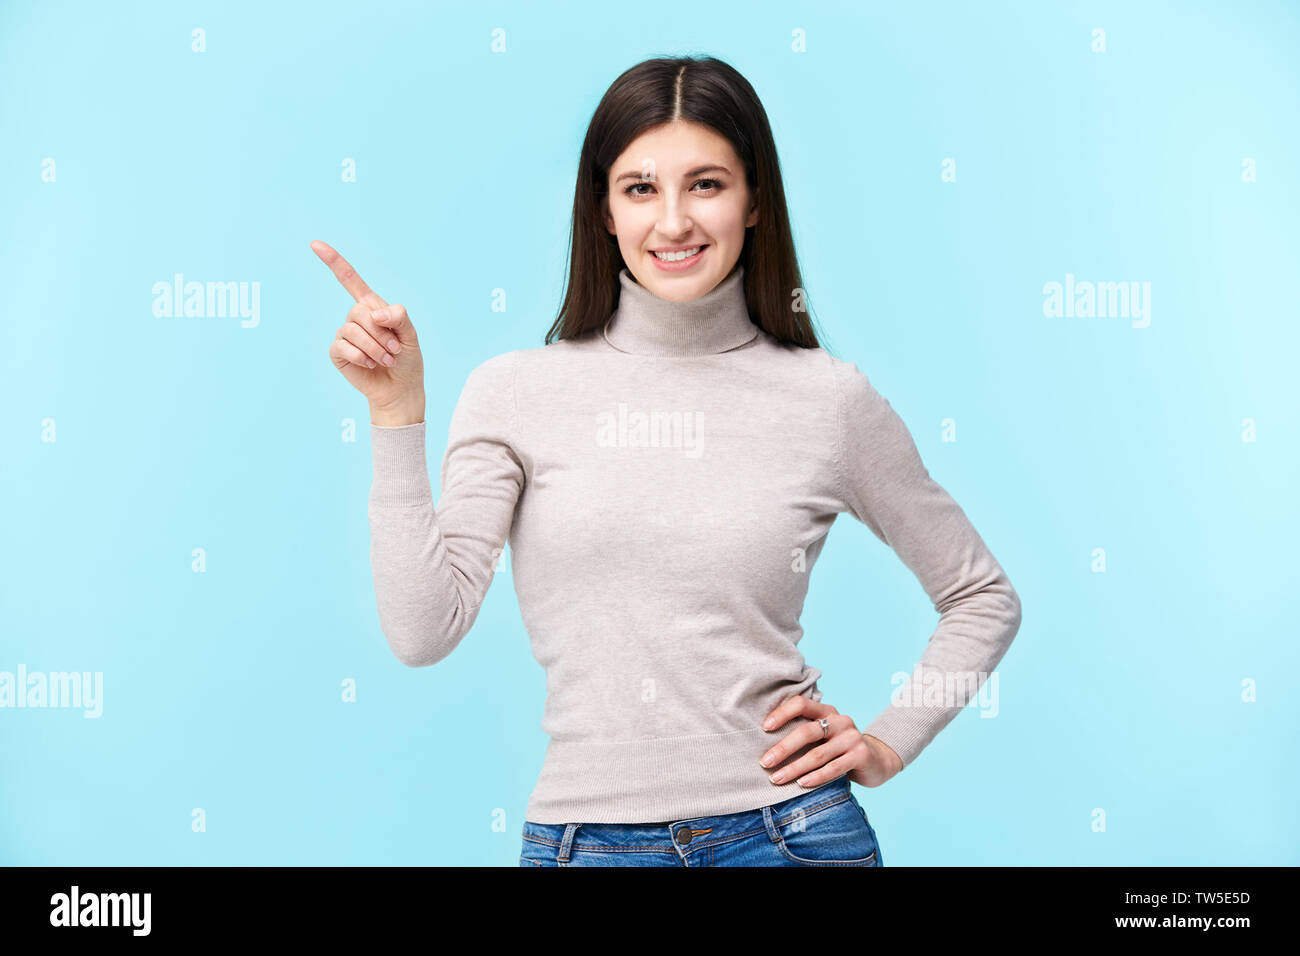 Portrait d'une belle jeune femme de race blanche, de pointer du doigt quelque chose, smiling, isolé sur fond bleu Banque D'Images